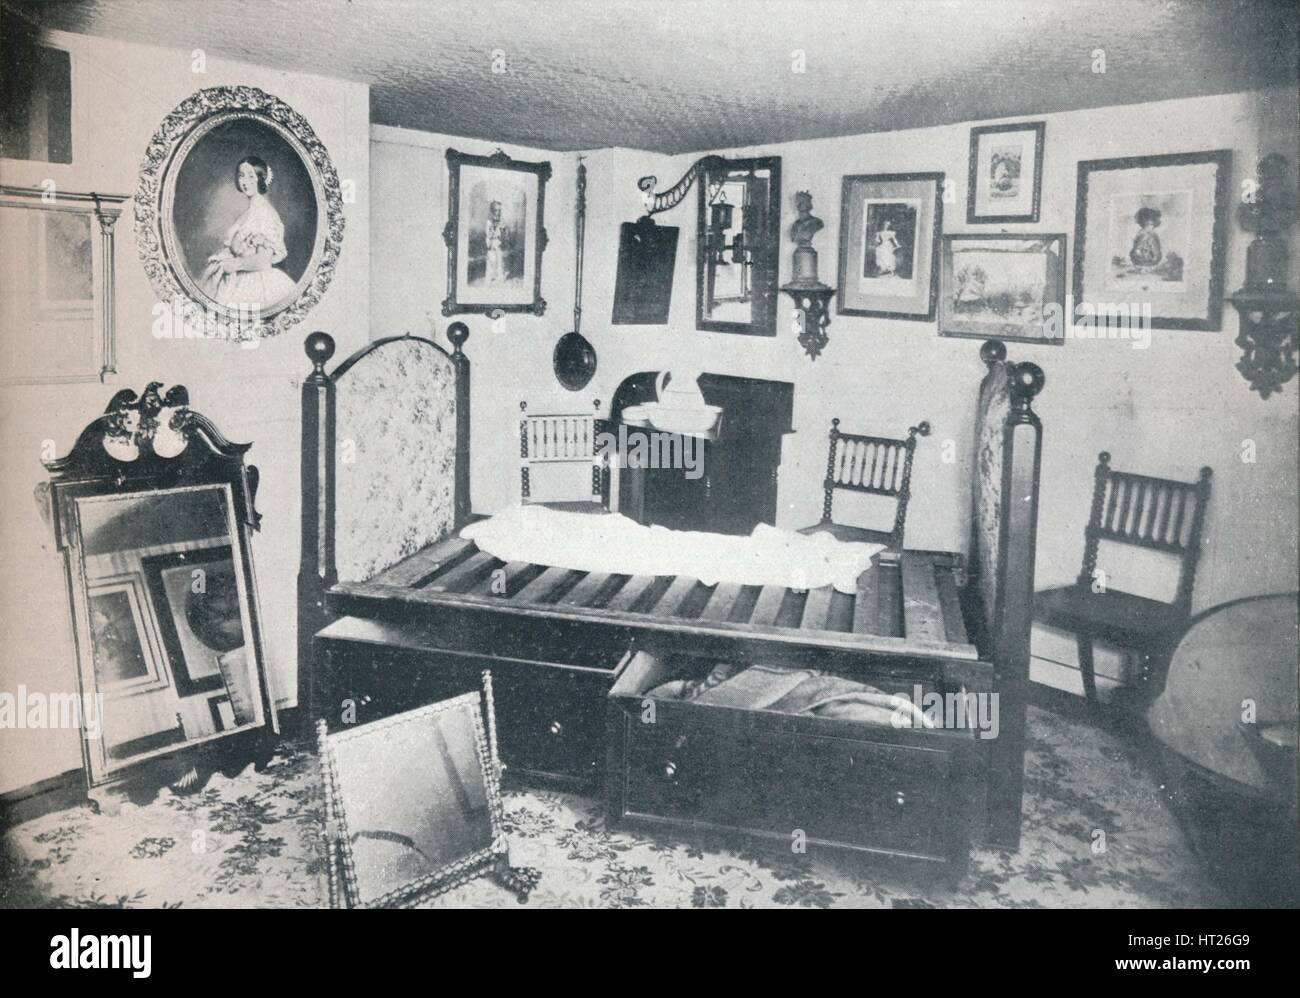 "Letto e i mobili della camera occupata dalla Principessa Victoria a Broadstairs', c1899, (1901). Artista: Swaine & Co. Foto Stock